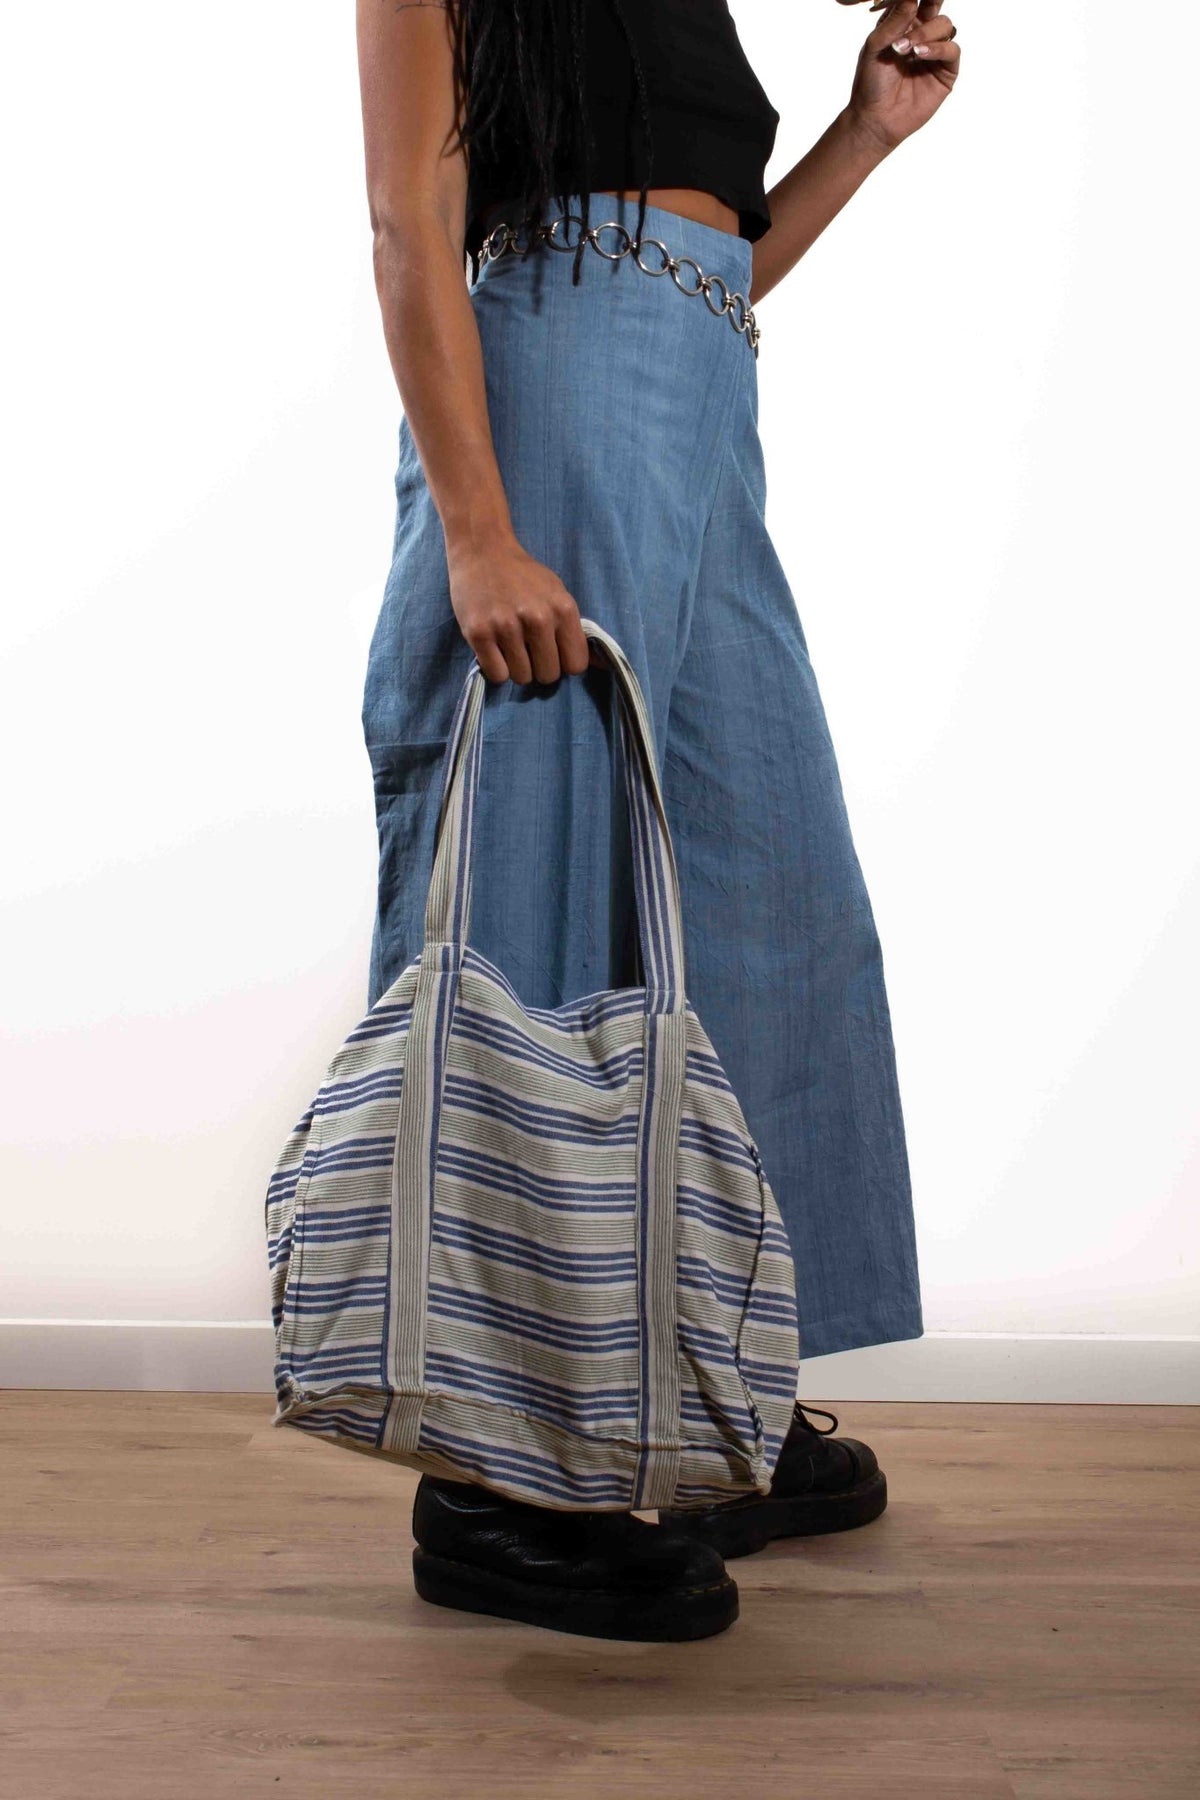 Tote Bag 2 - Sacs à main - Azaadi, la mode responsable accessible